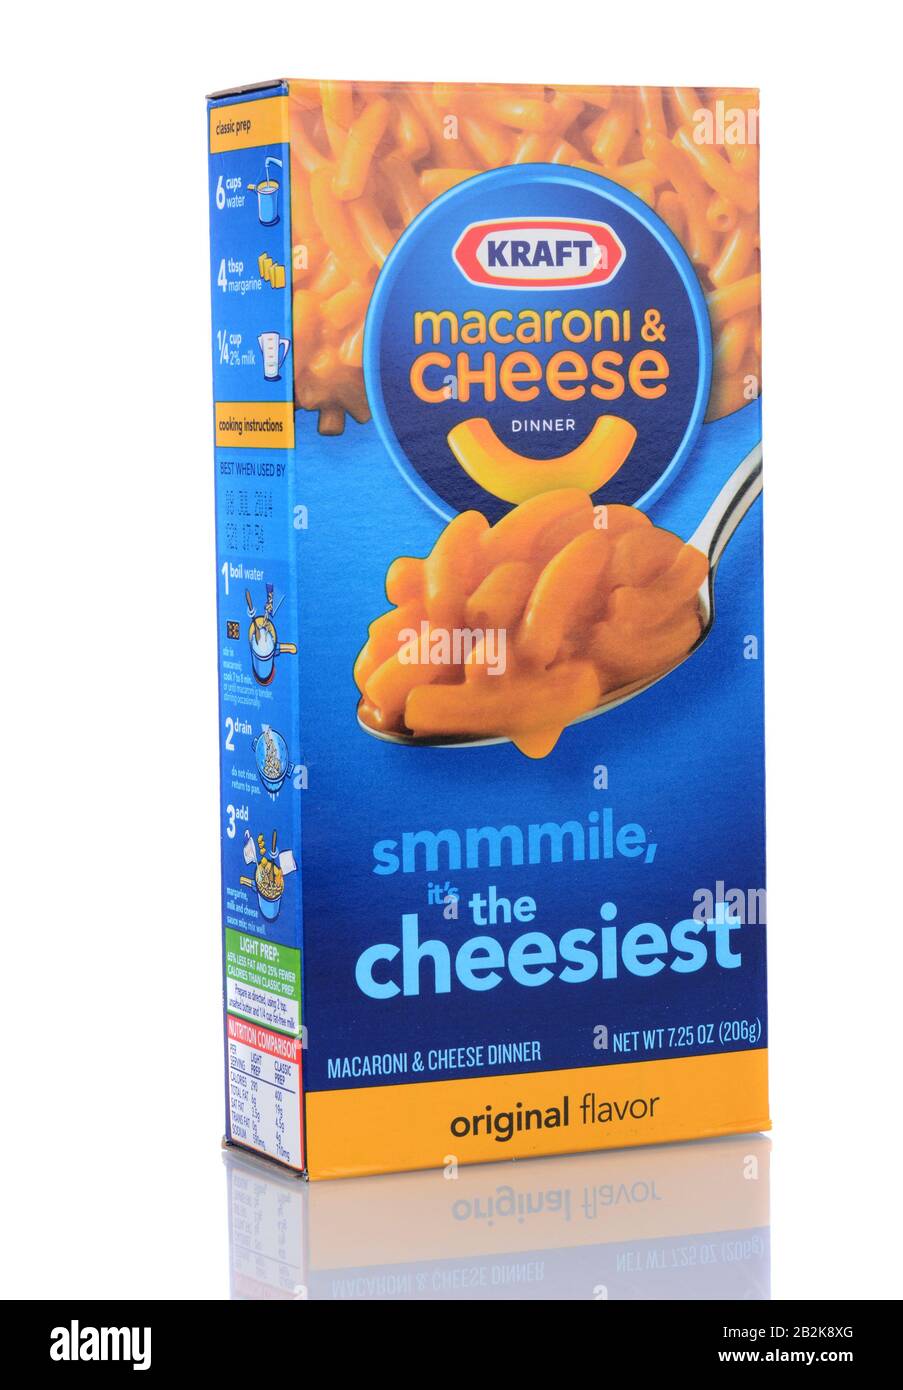 Irvine, CA - 06. Februar 2013: Eine Schachtel mit Kraft Macaroni und Käse. Die verpackte Mahlzeit wurde erstmals 1937 während der Weltwirtschaftskrise eingeführt. Stockfoto